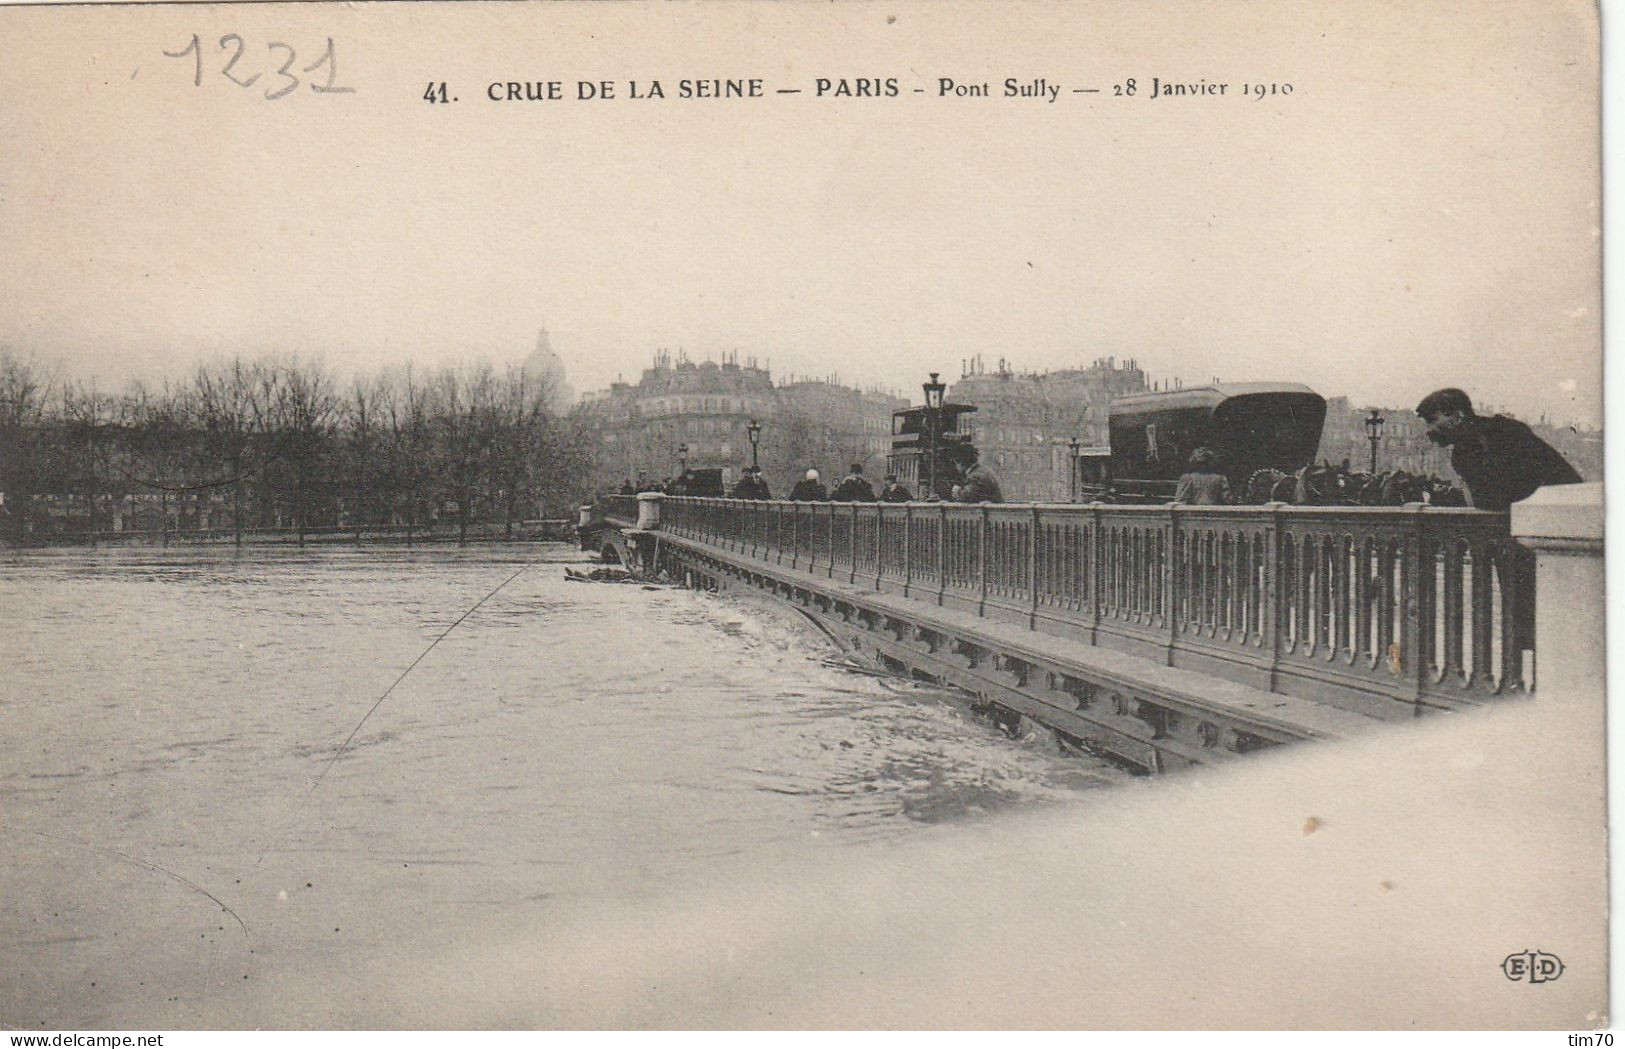 PARIS    CRUE DE LA  SEINE 29 JANVIER  1910   PONT  DE SULLY  28  JANVIER - Paris Flood, 1910